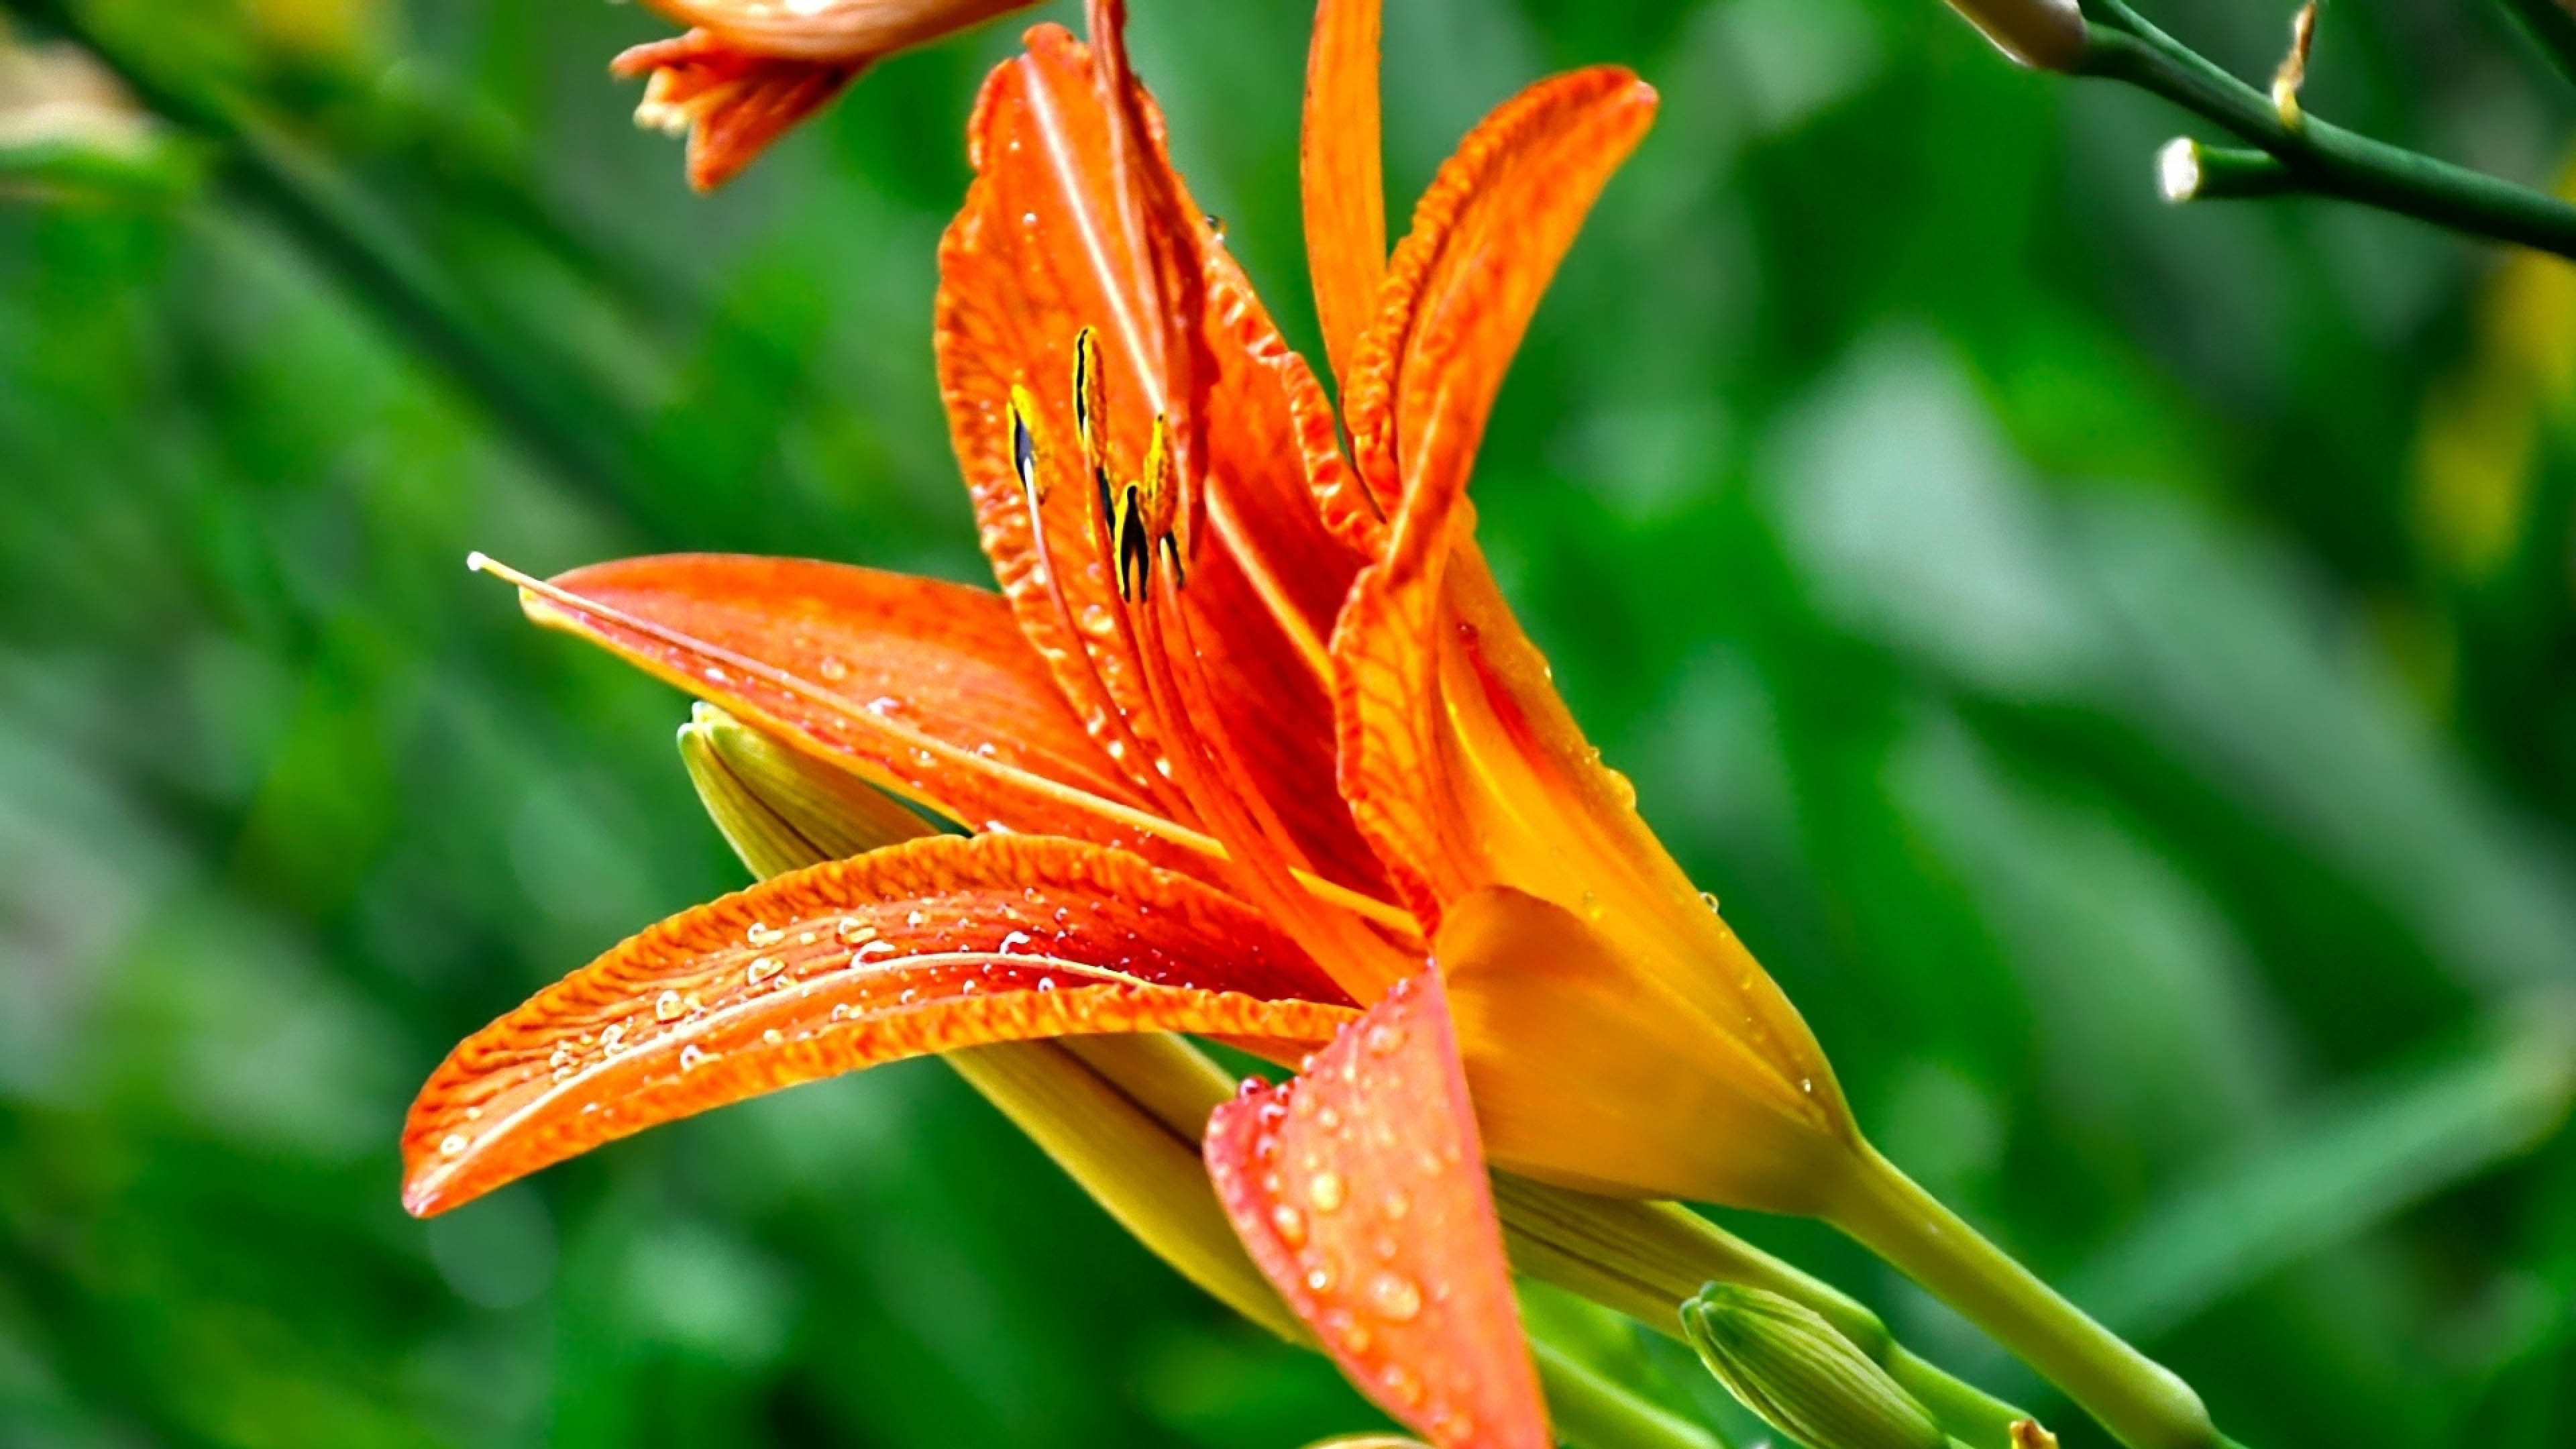 Amazing Close up on Exotic Orange Flower   3840x2160   4K 169 Ultra